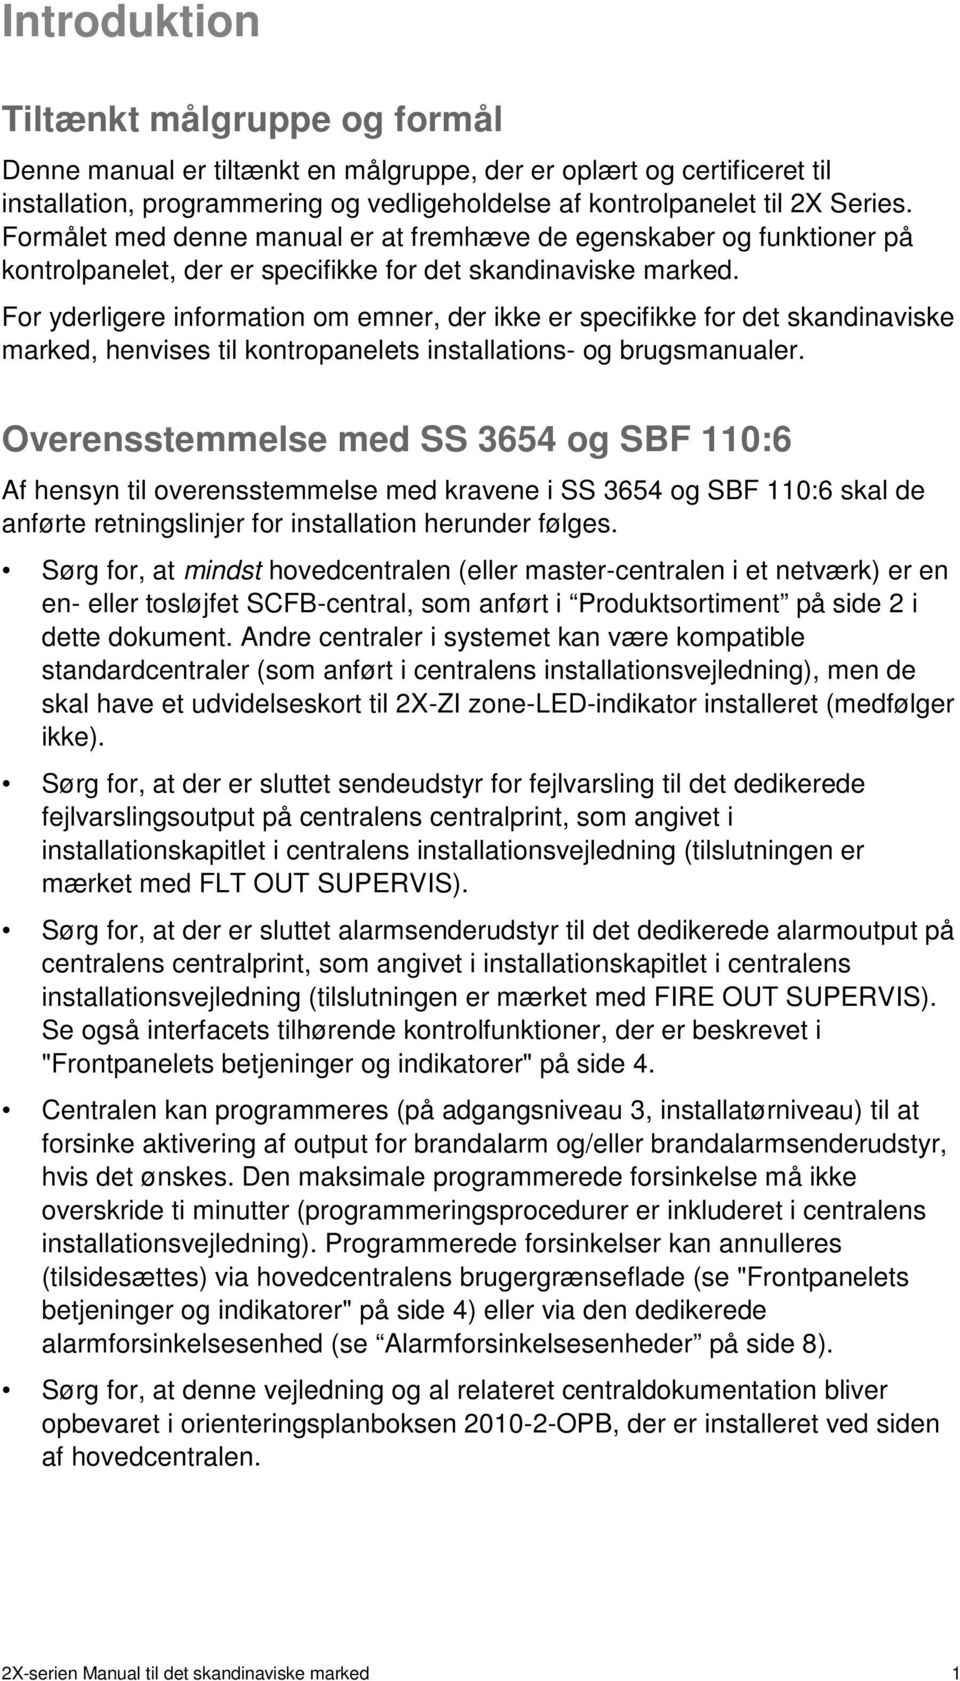 For yderligere information om emner, der ikke er specifikke for det skandinaviske marked, henvises til kontropanelets installations- og brugsmanualer.